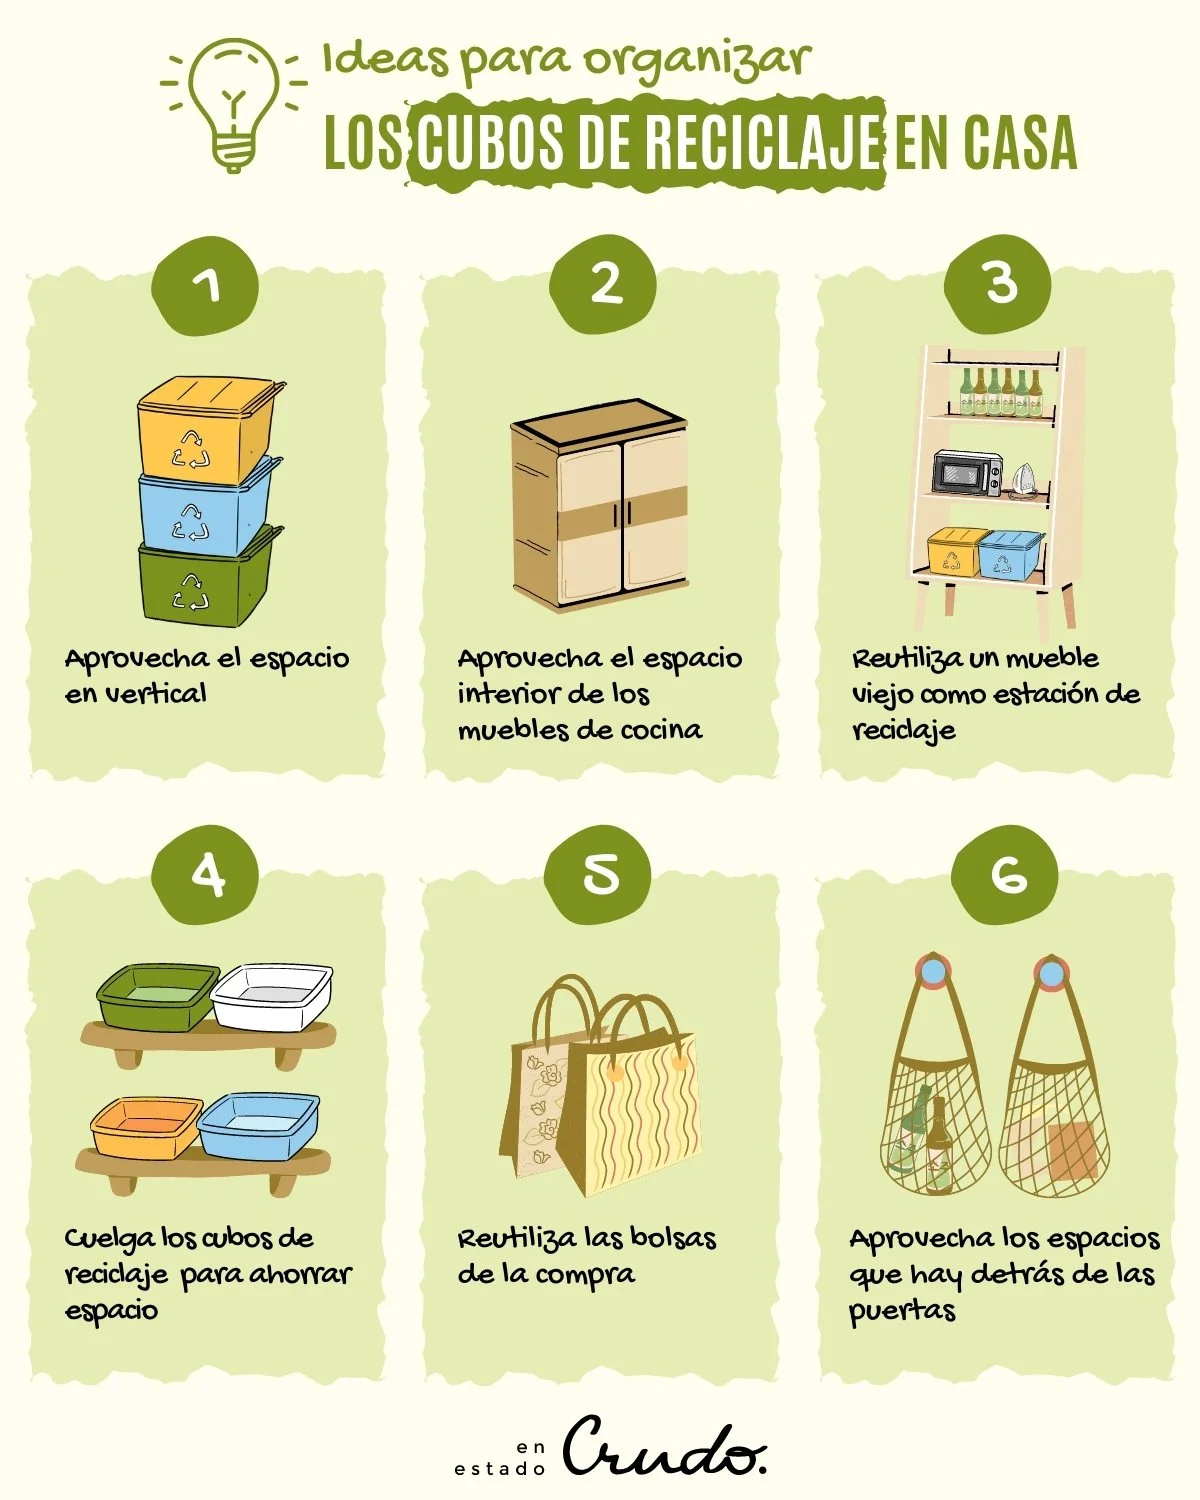 Las mejores ideas para organizar los cubos de reciclaje